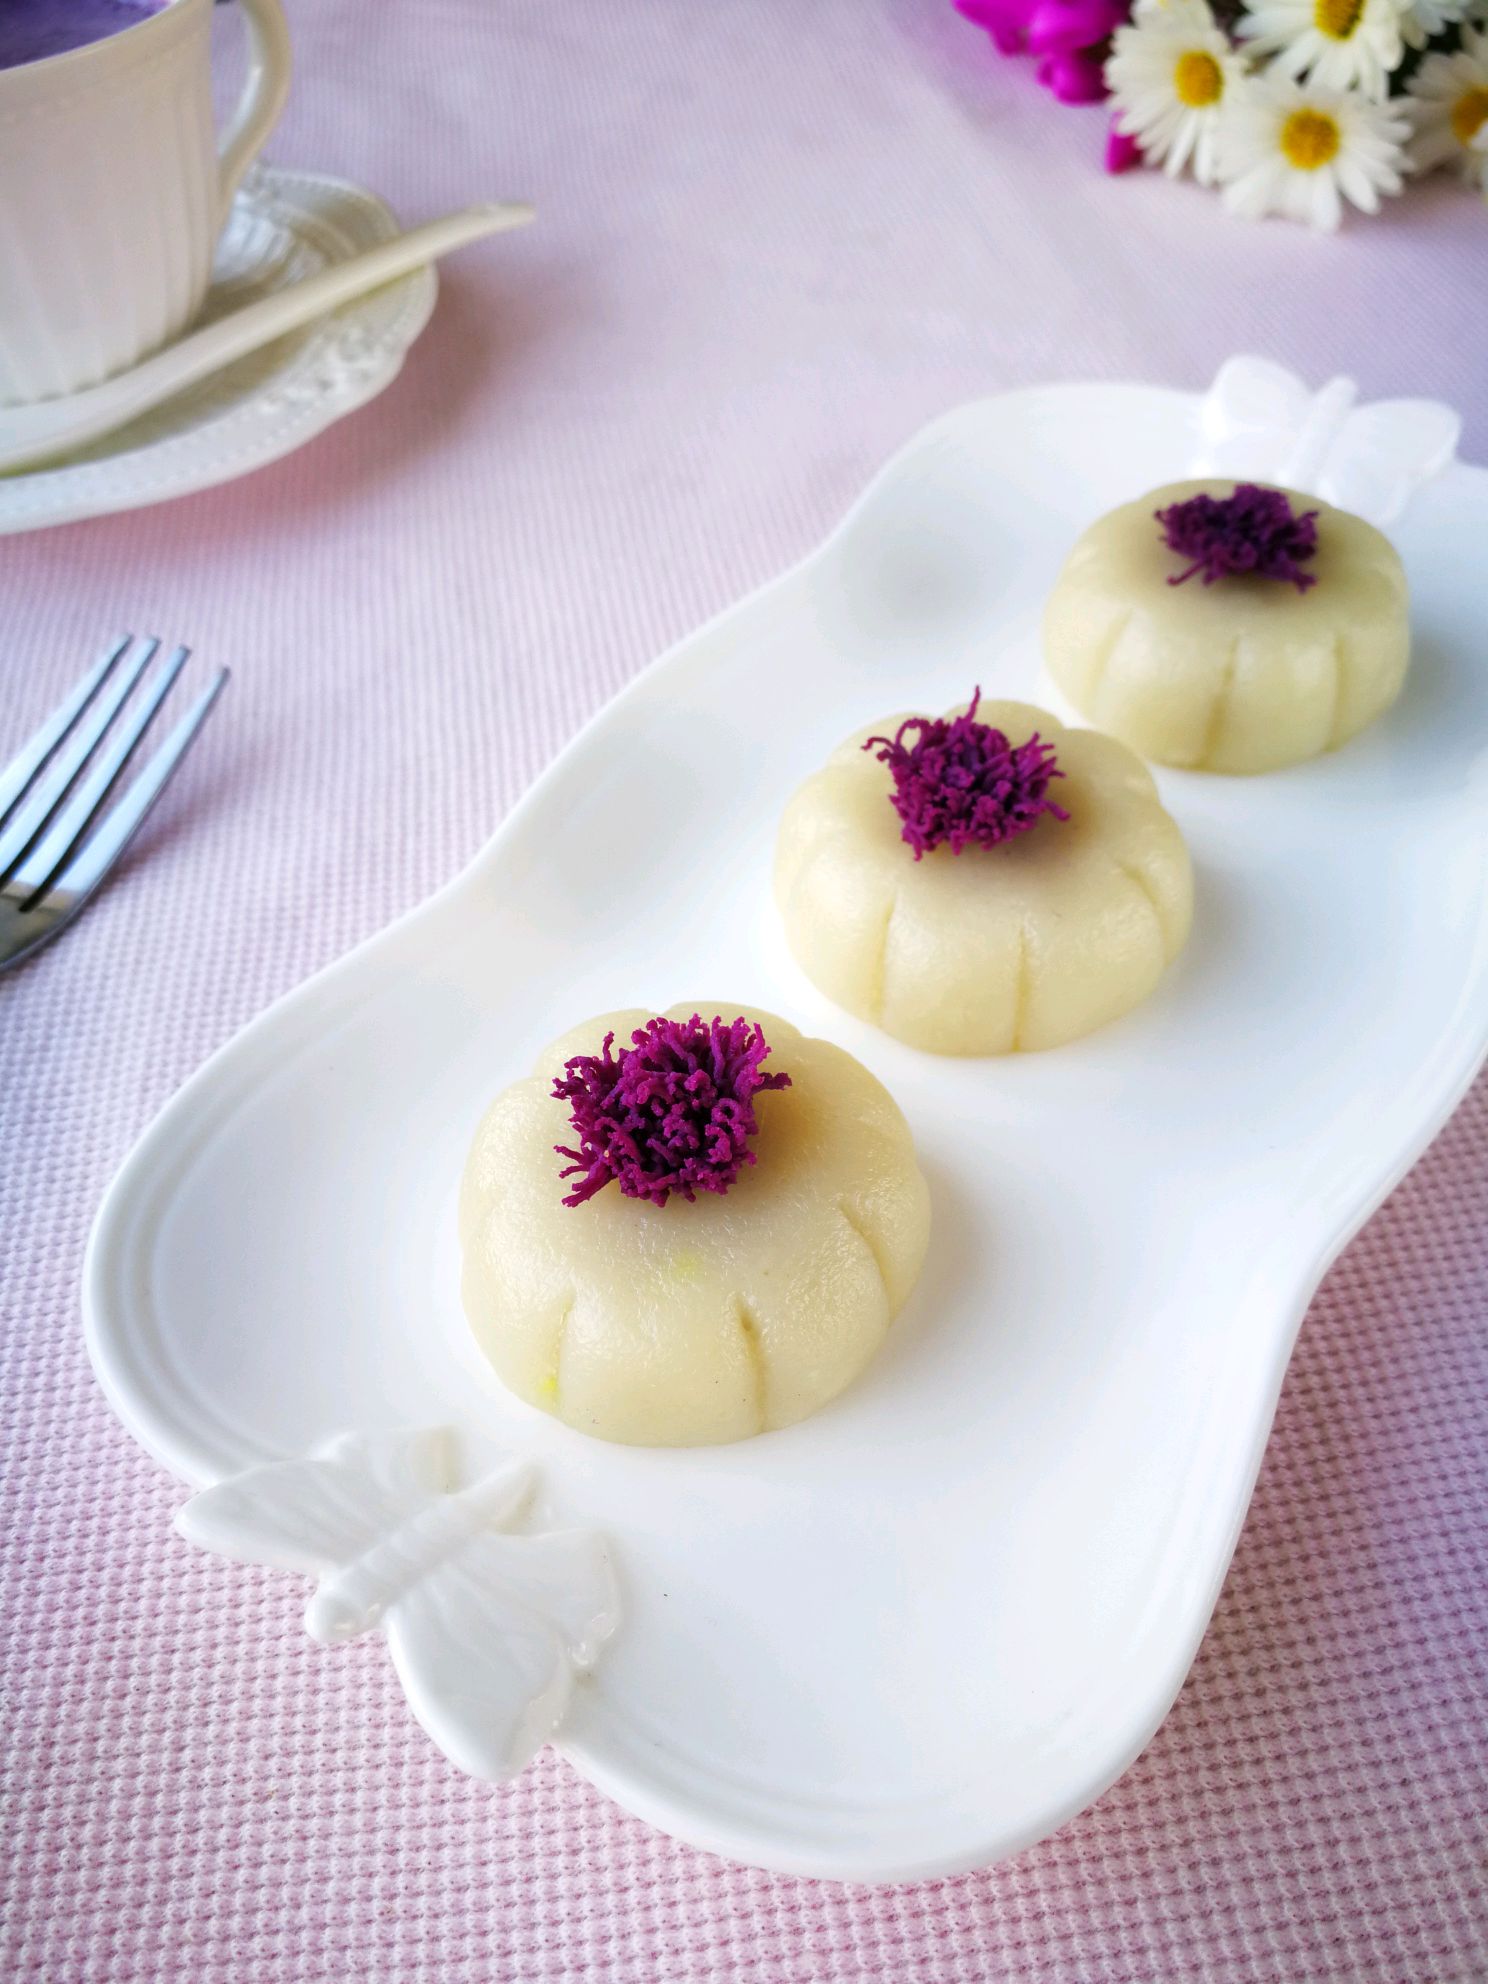 【2011年菜展】天然美色—紫薯奶酪软糕_紫薯奶酪软糕_浓咖啡淡心情的日志_美食天下